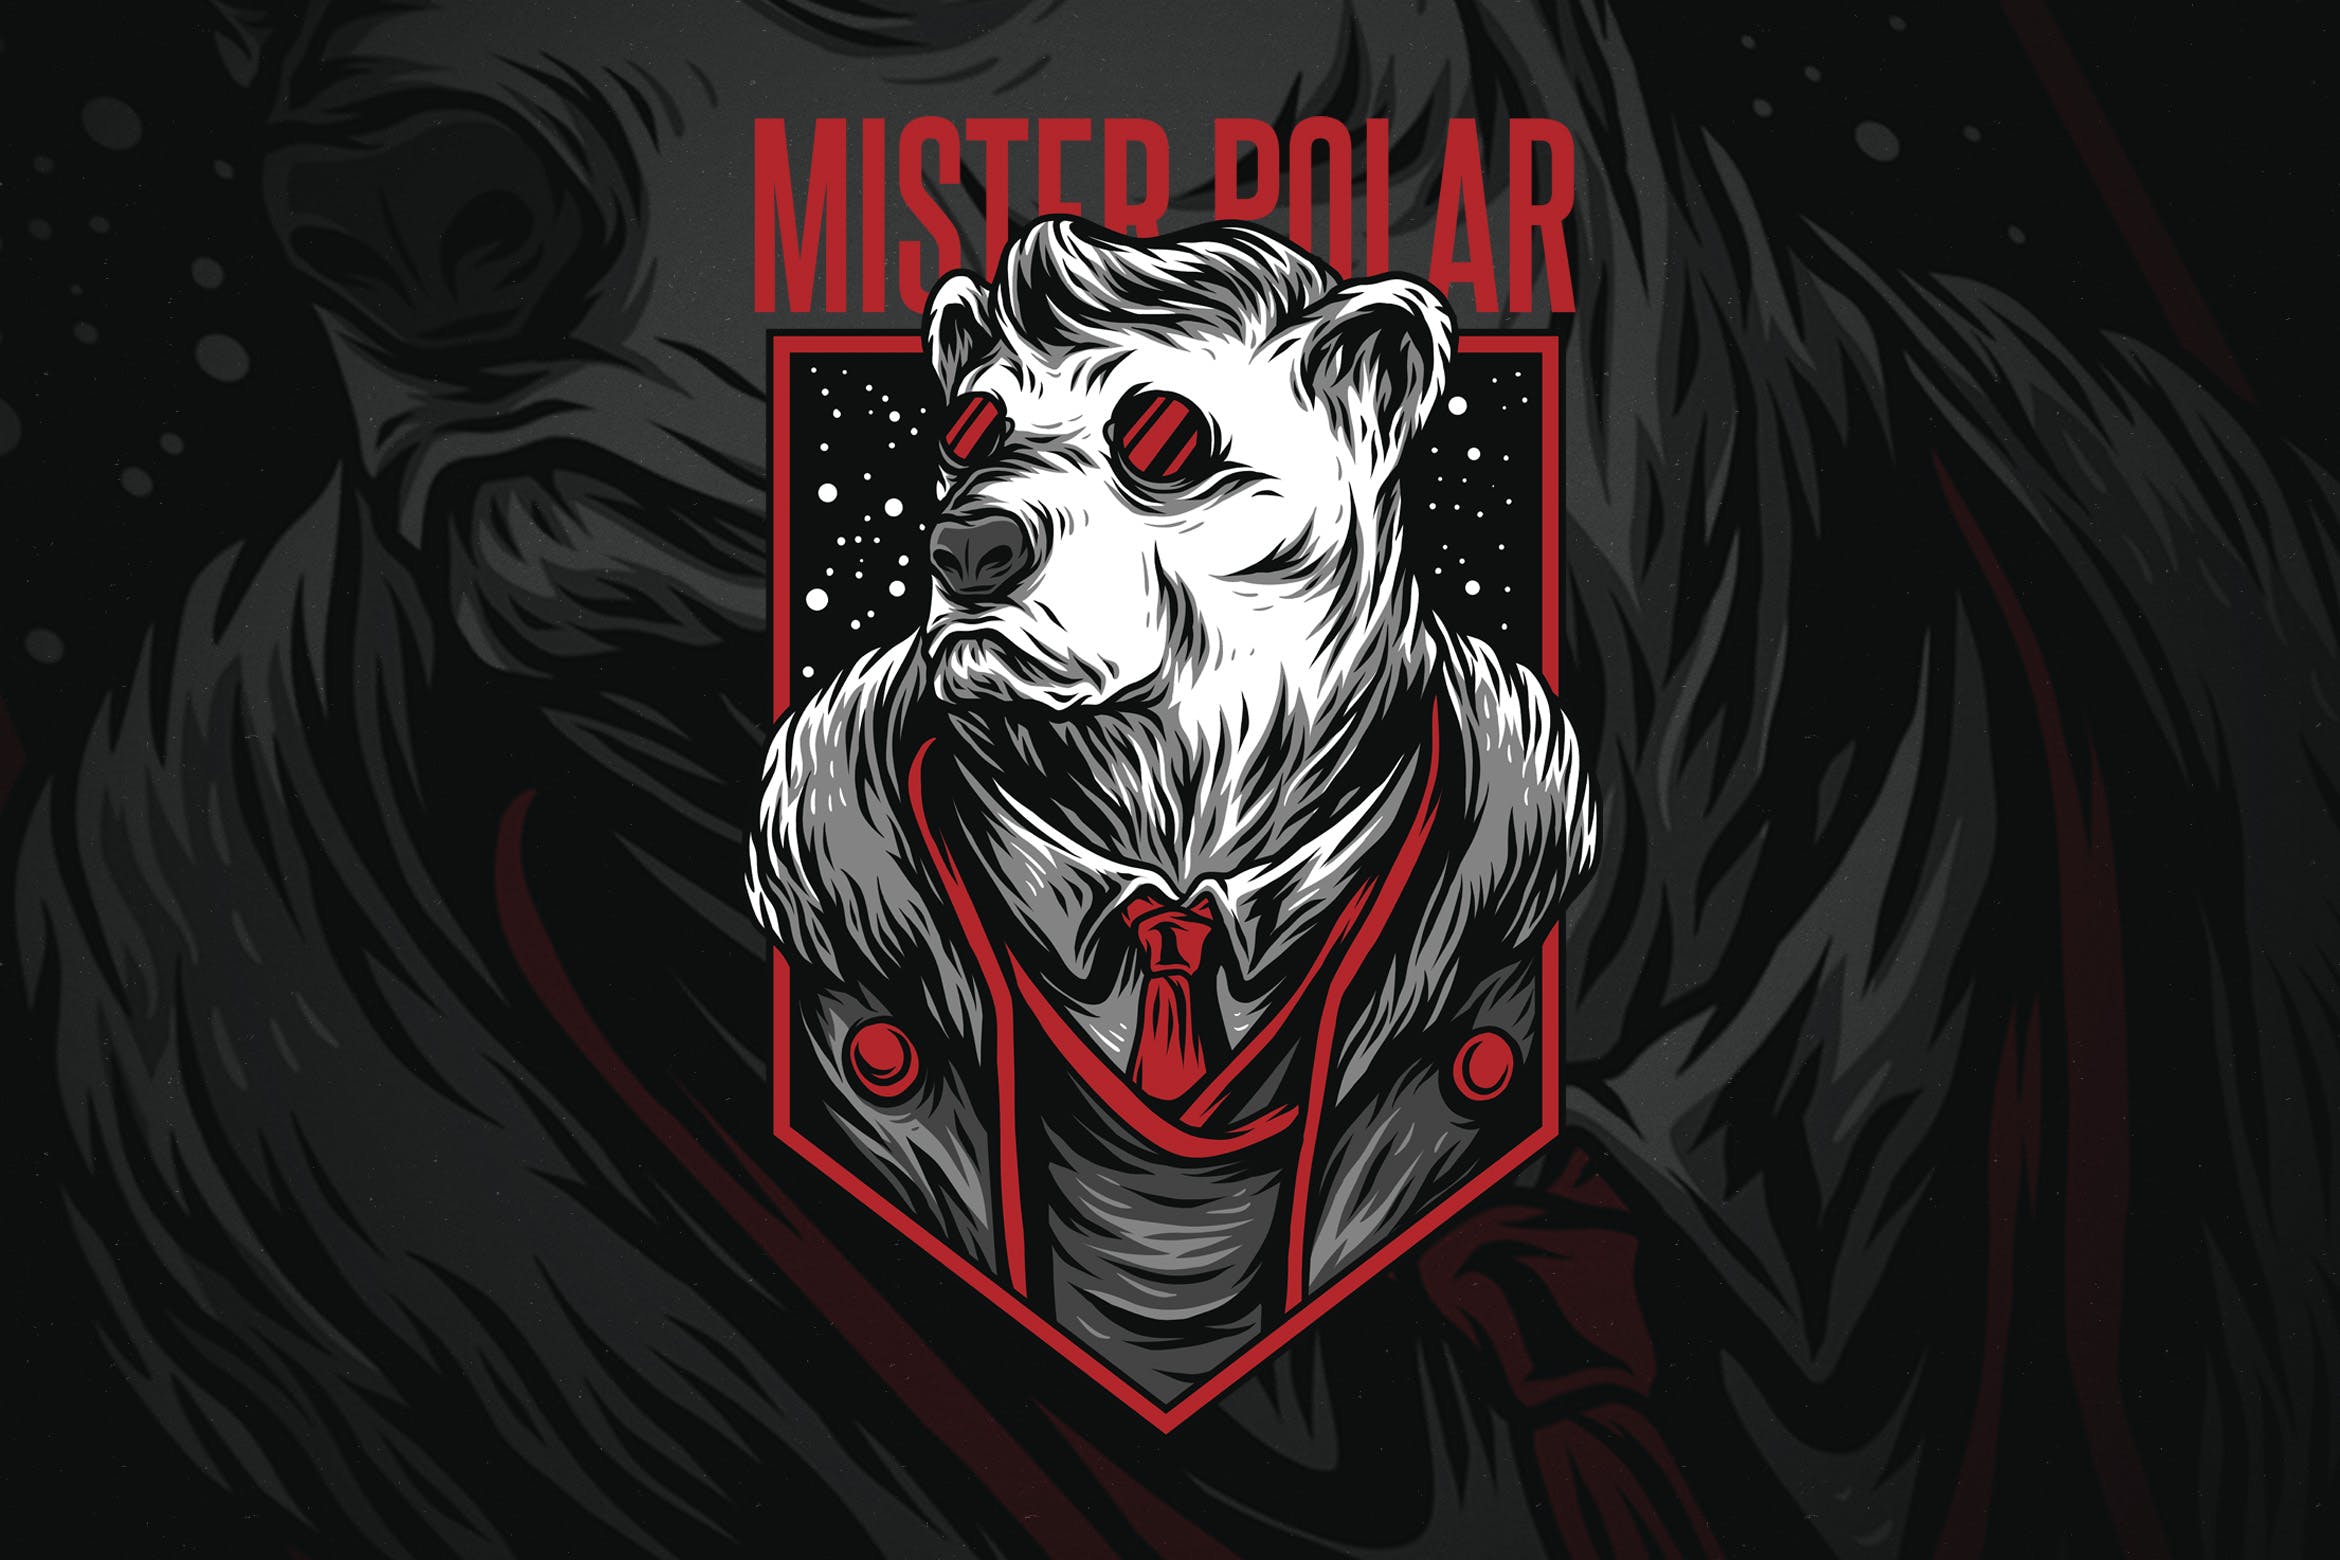 极地先生潮牌T恤印花图案第一素材精选设计素材 Mister Polar插图